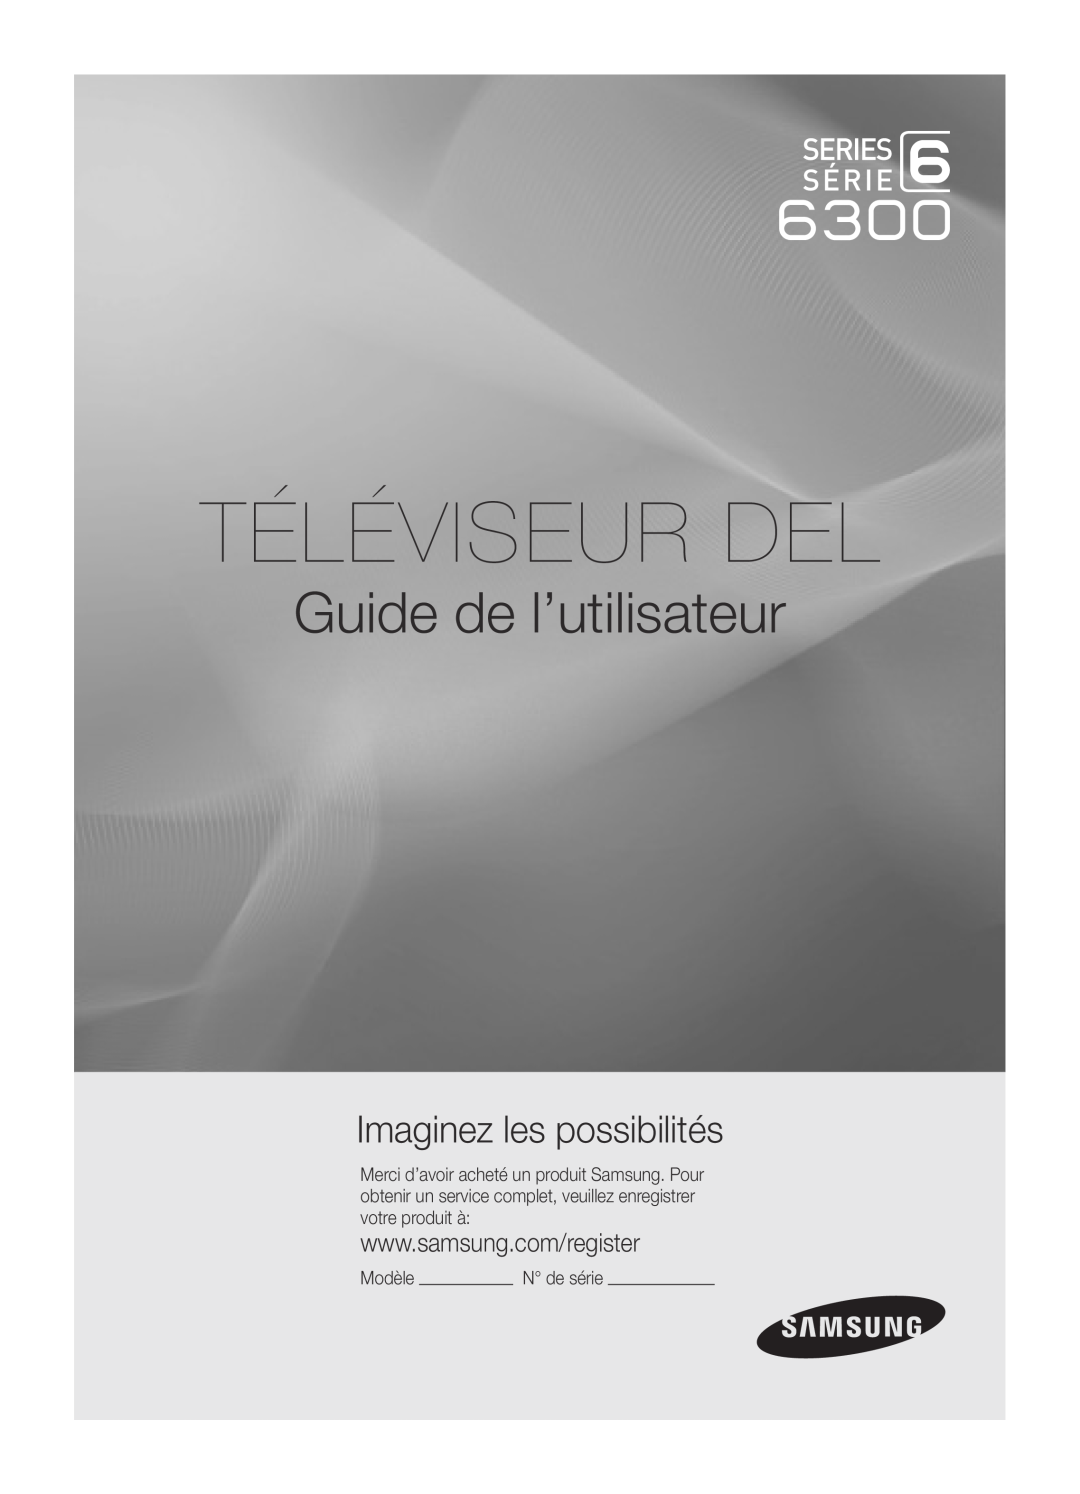 Samsung UC6300-ZC, BN68-03165B-01 user manual Téléviseur Del, Guide de l’utilisateur, Imaginez les possibilités 